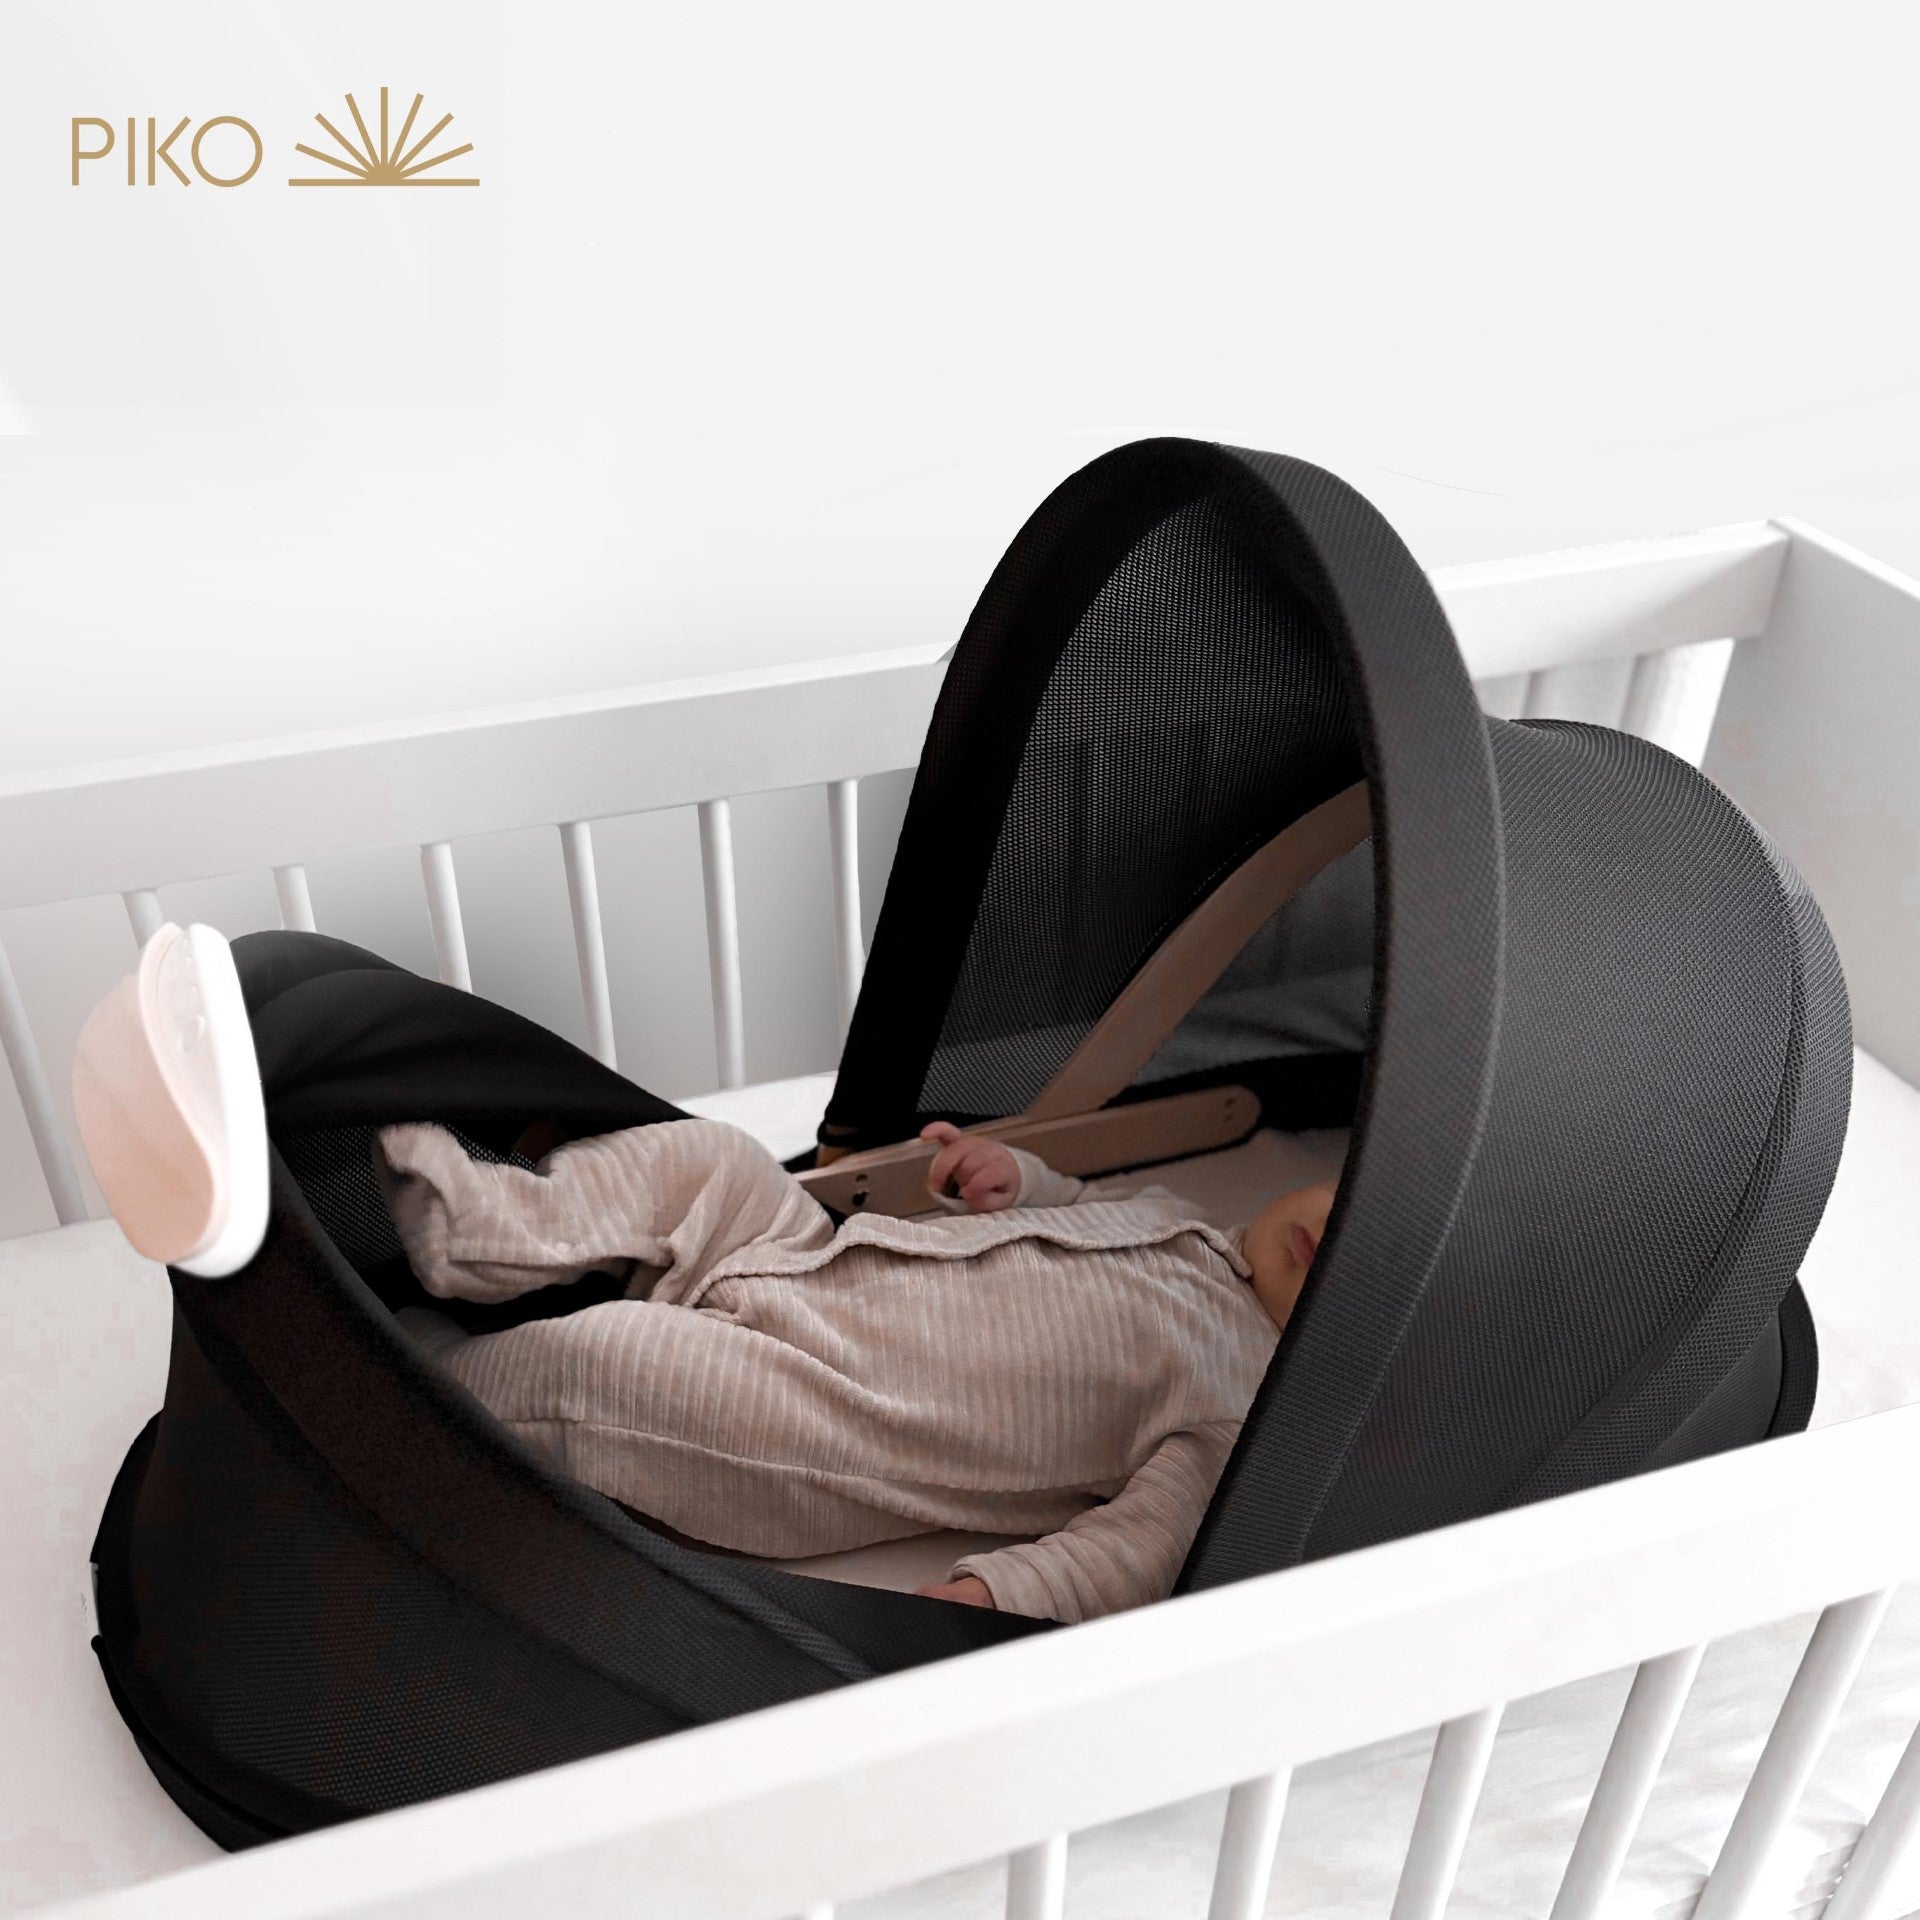 PIKO® subscription - Sleeper + Sound Pod + Matras